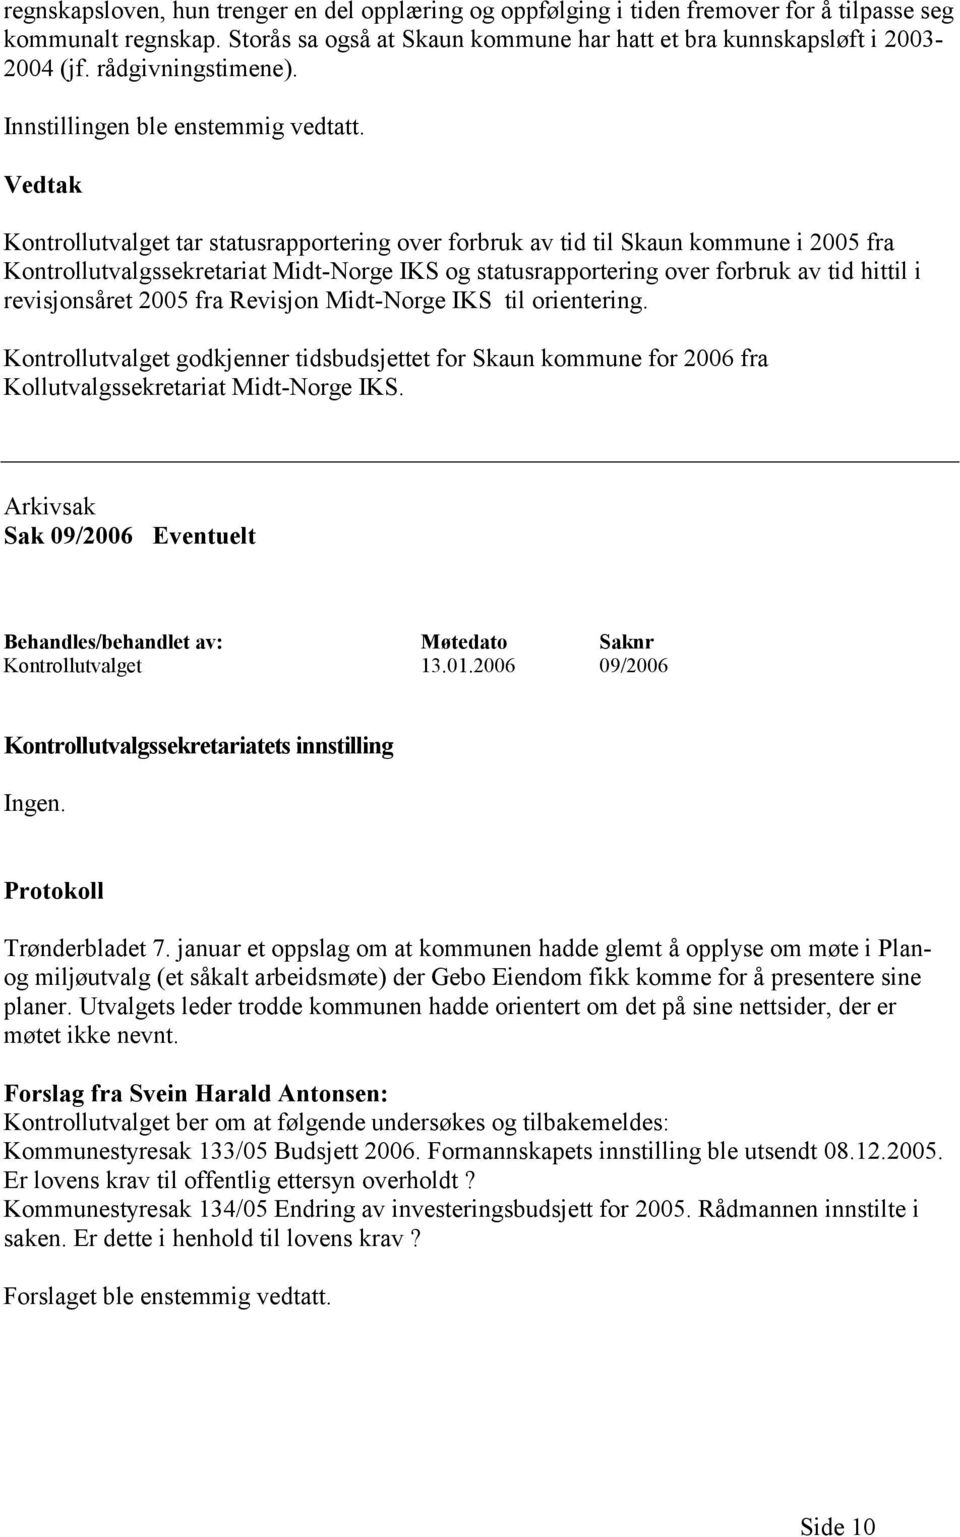 Kontrollutvalget tar statusrapportering over forbruk av tid til Skaun kommune i 2005 fra Kontrollutvalgssekretariat Midt-Norge IKS og statusrapportering over forbruk av tid hittil i revisjonsåret